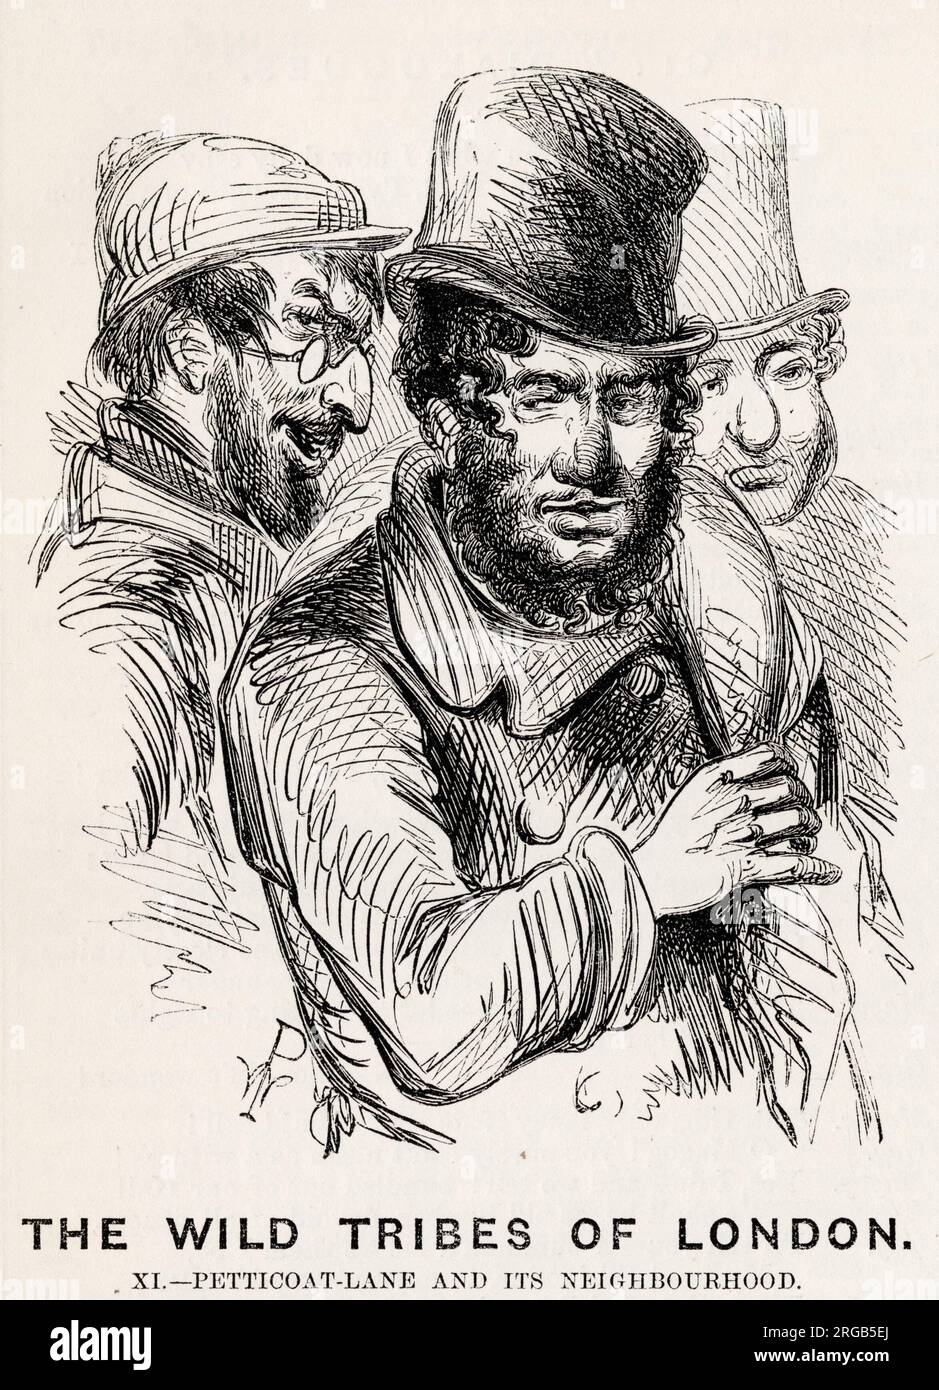 Alte Bekleidungsmänner aus Petticoat Lane, London, 1853. Verdächtig aussehende jüdische Figuren. antisemitische Darstellung. Stockfoto